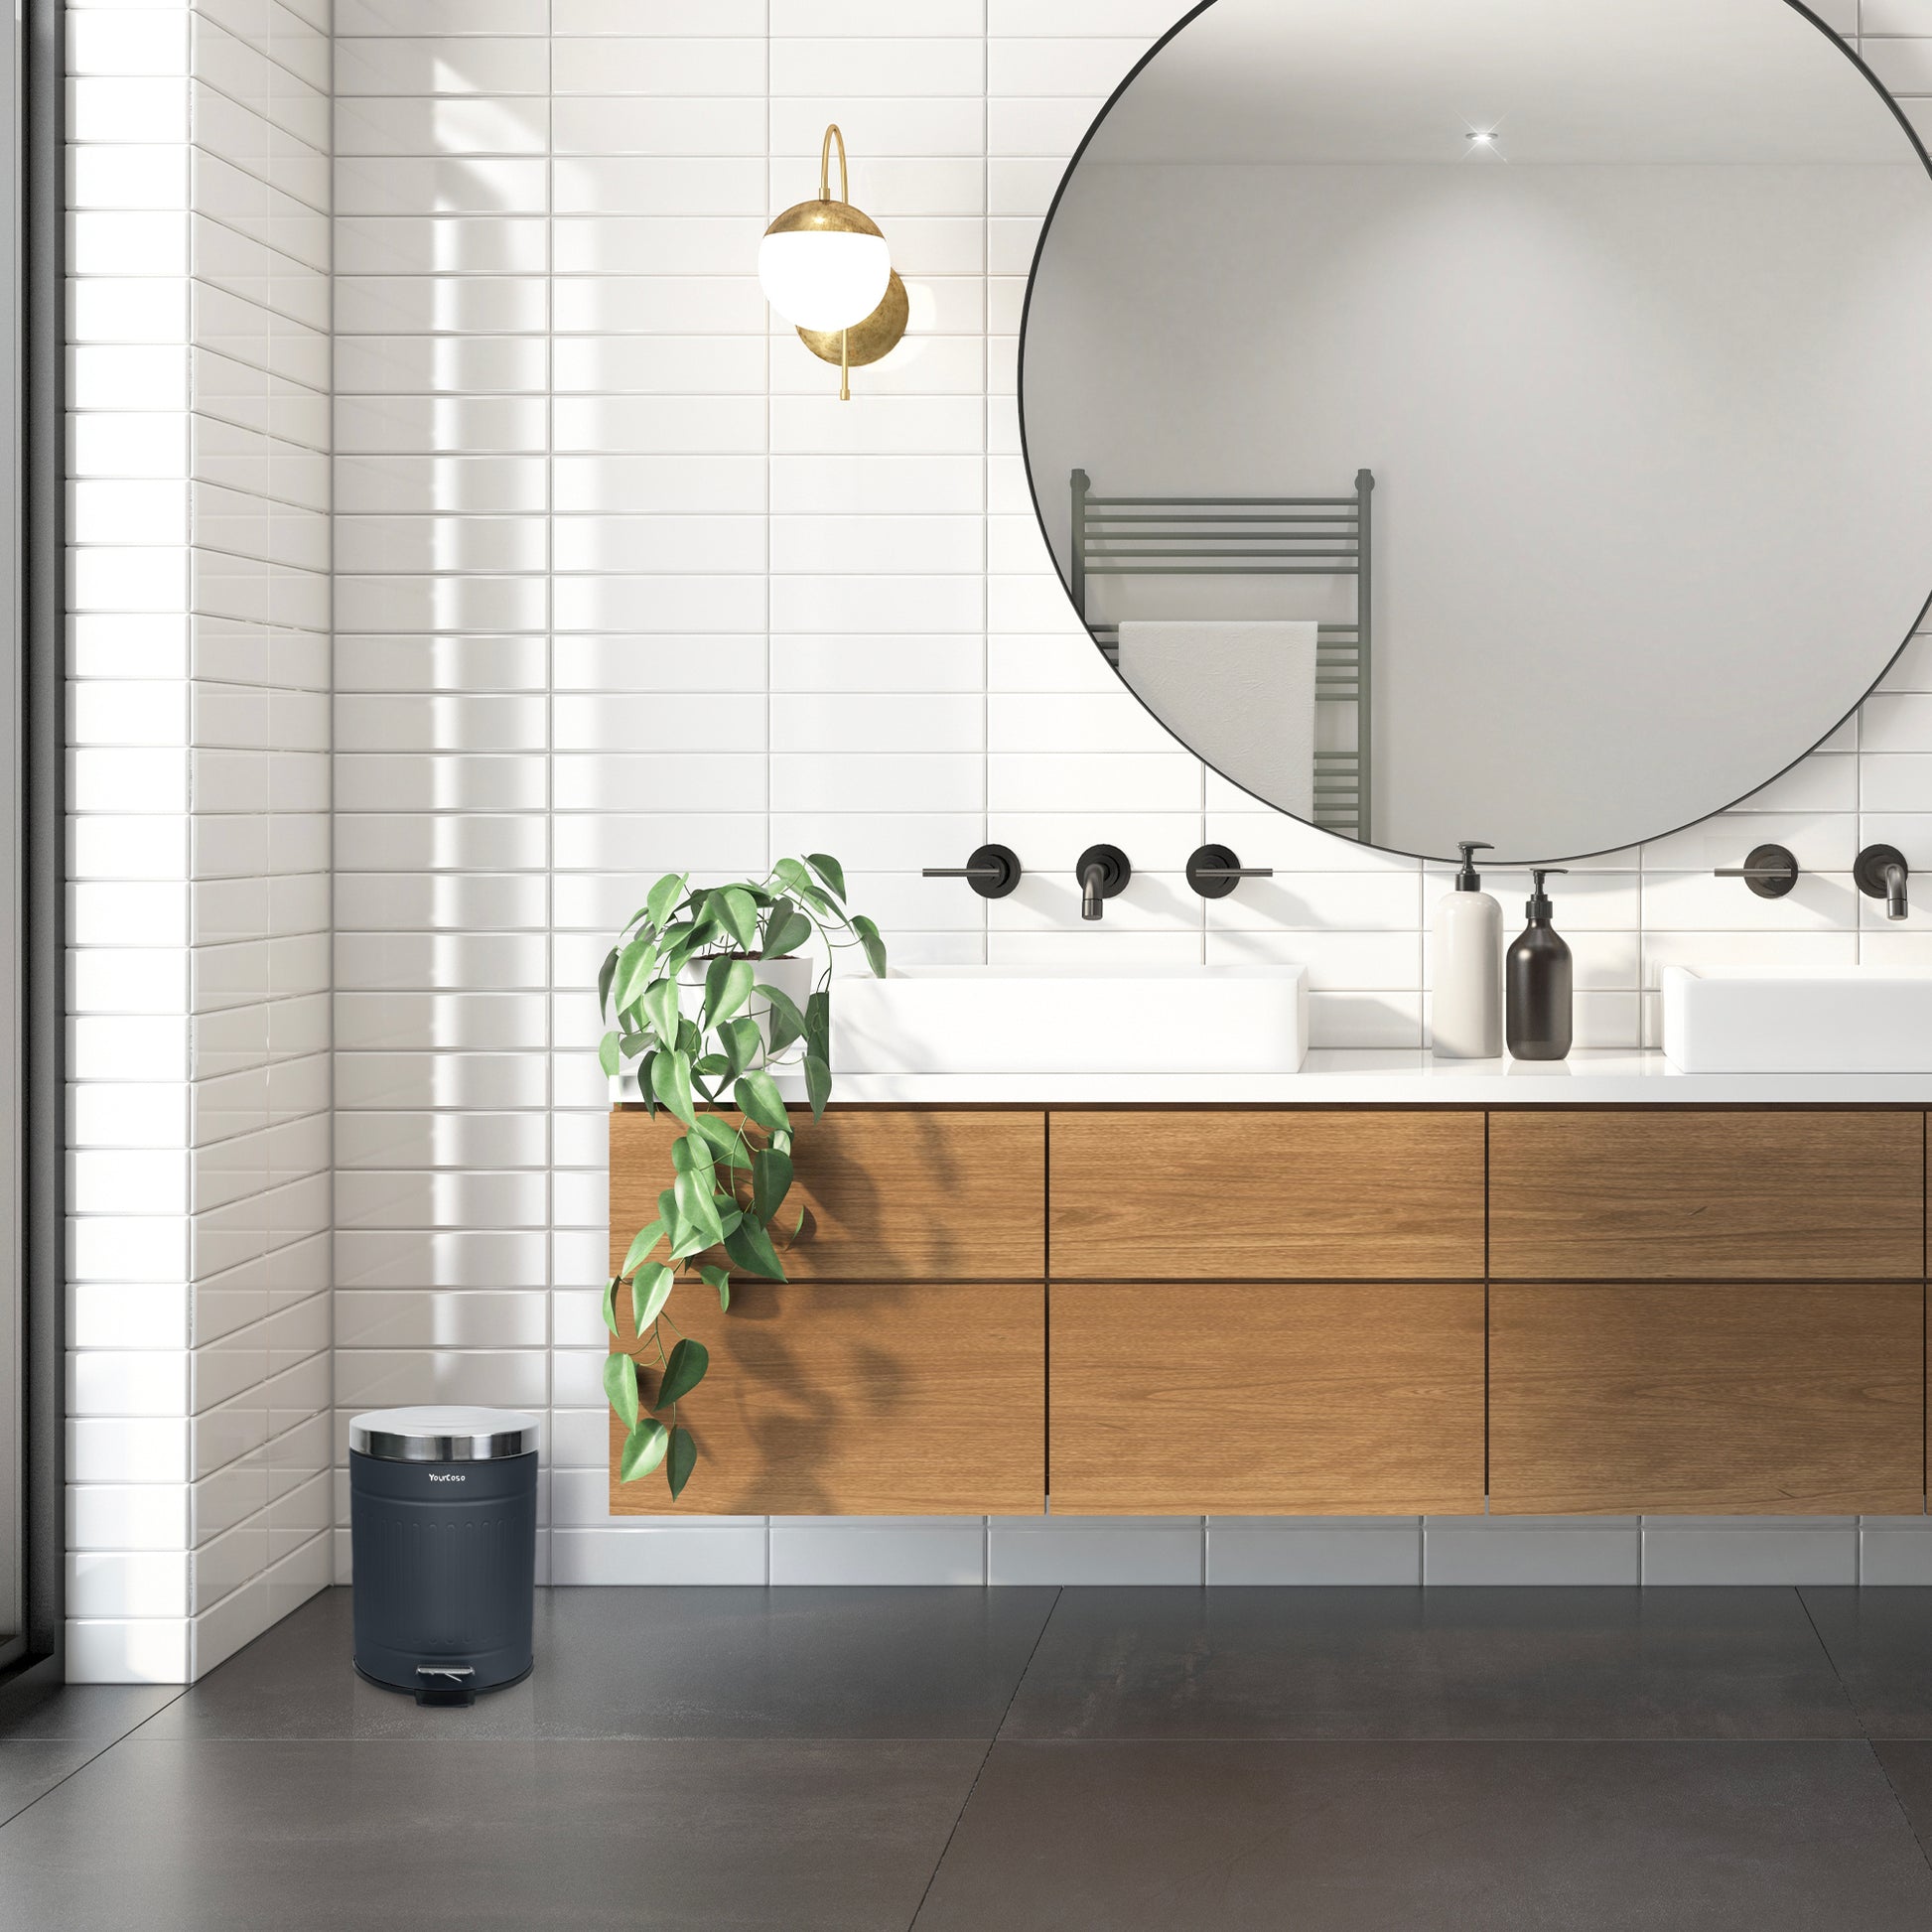 Ein modernes Badezimmer mit großem Spiegel, YourCasa® Mülleimer [5L] Edelstahl Retro Design – für Badezimmer oder Küche, Waschbecken und Fassungsvermögen.